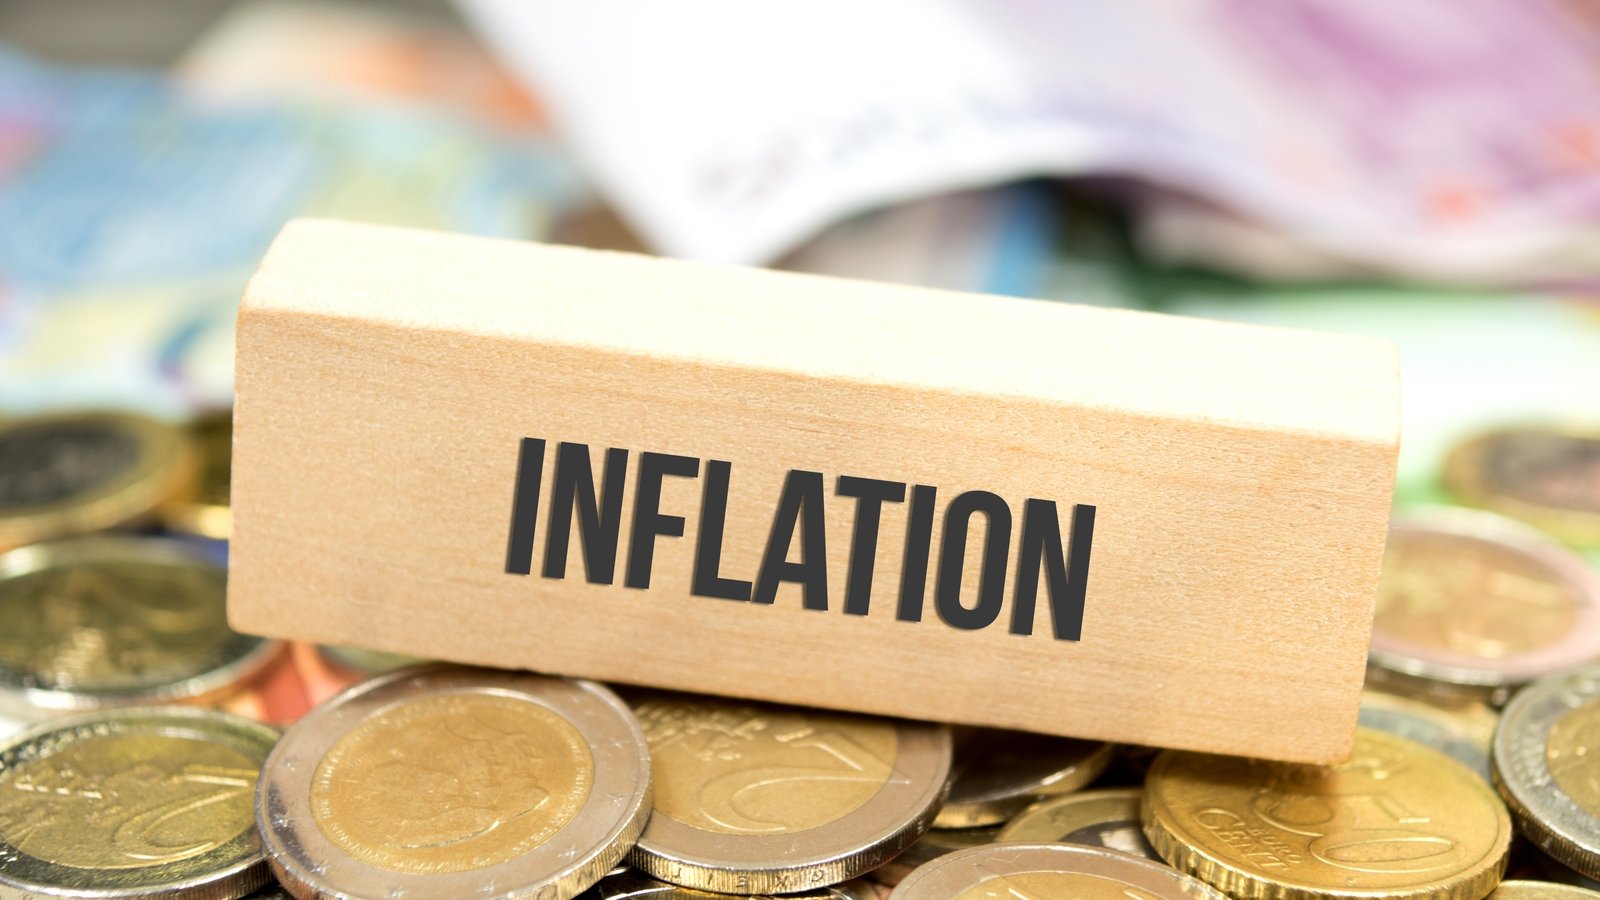 La Commission européenne revoit à la hausse ses prévisions d'inflation